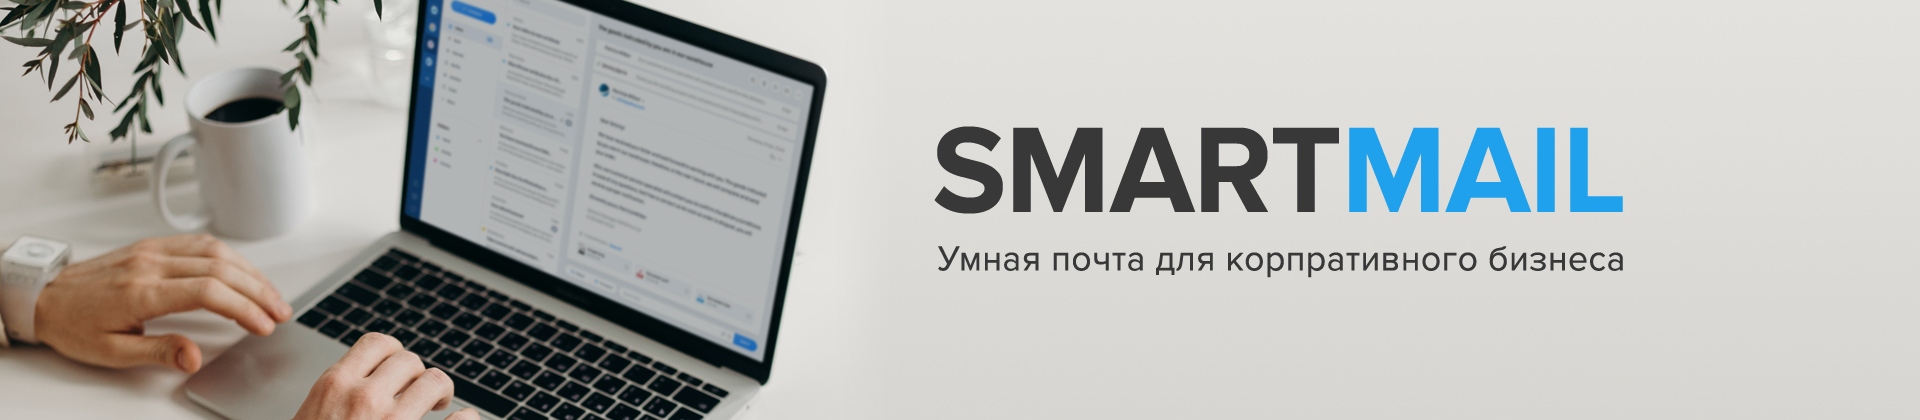 Почтовый сервис SmartMail - получить консультацию